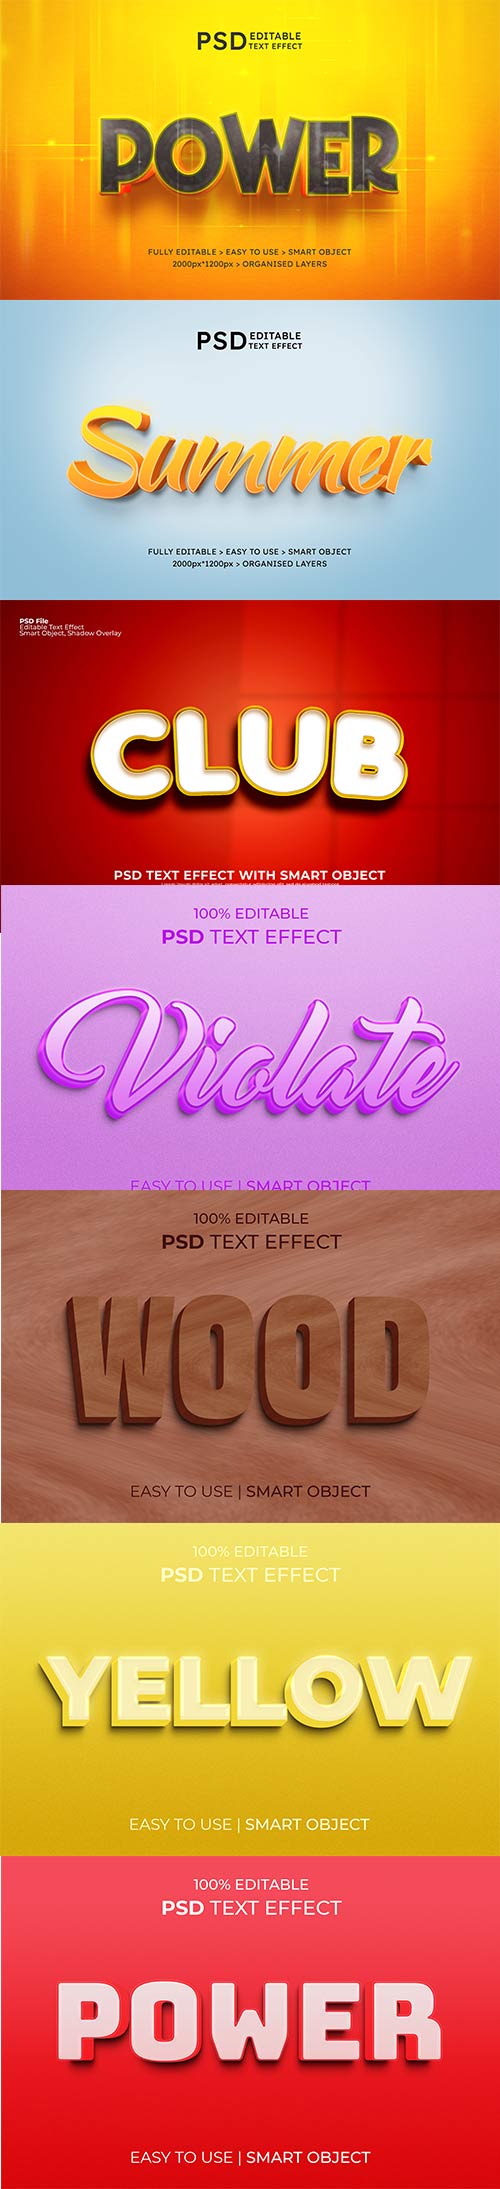 Psd text effect set vol 591